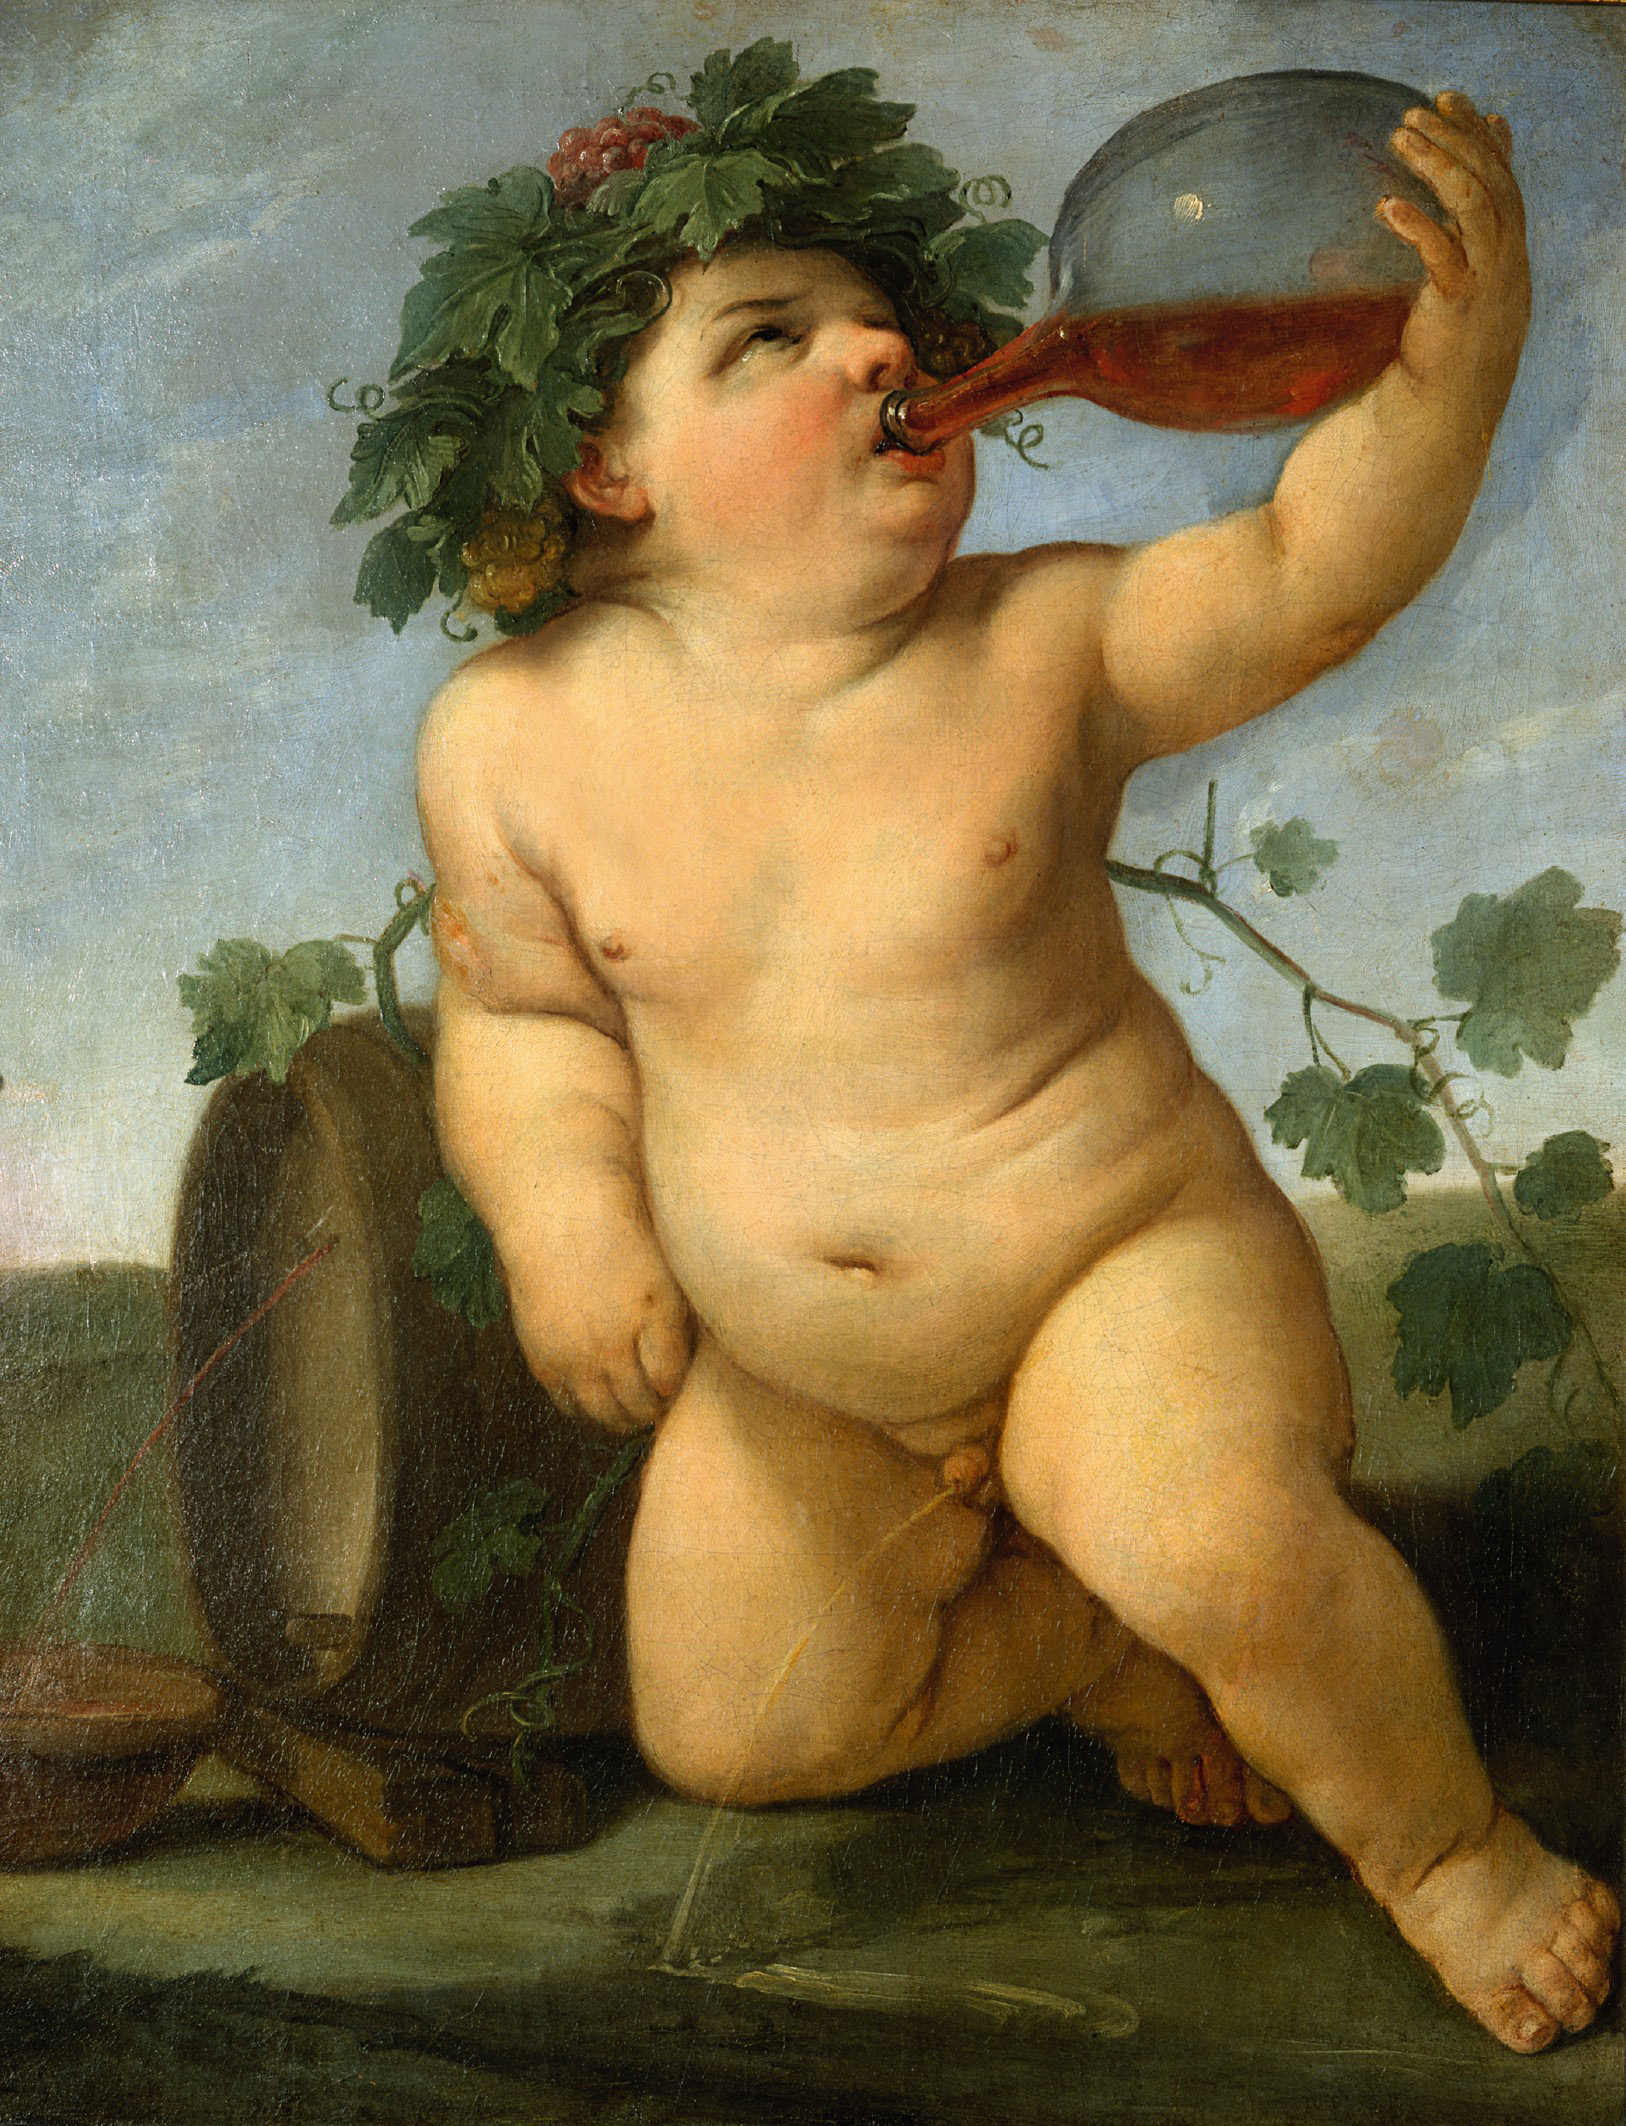 Baco bebiendo by Guido Reni - circa 1623 - 72 x 56 cm Colecciones estatales de arte de Dresde